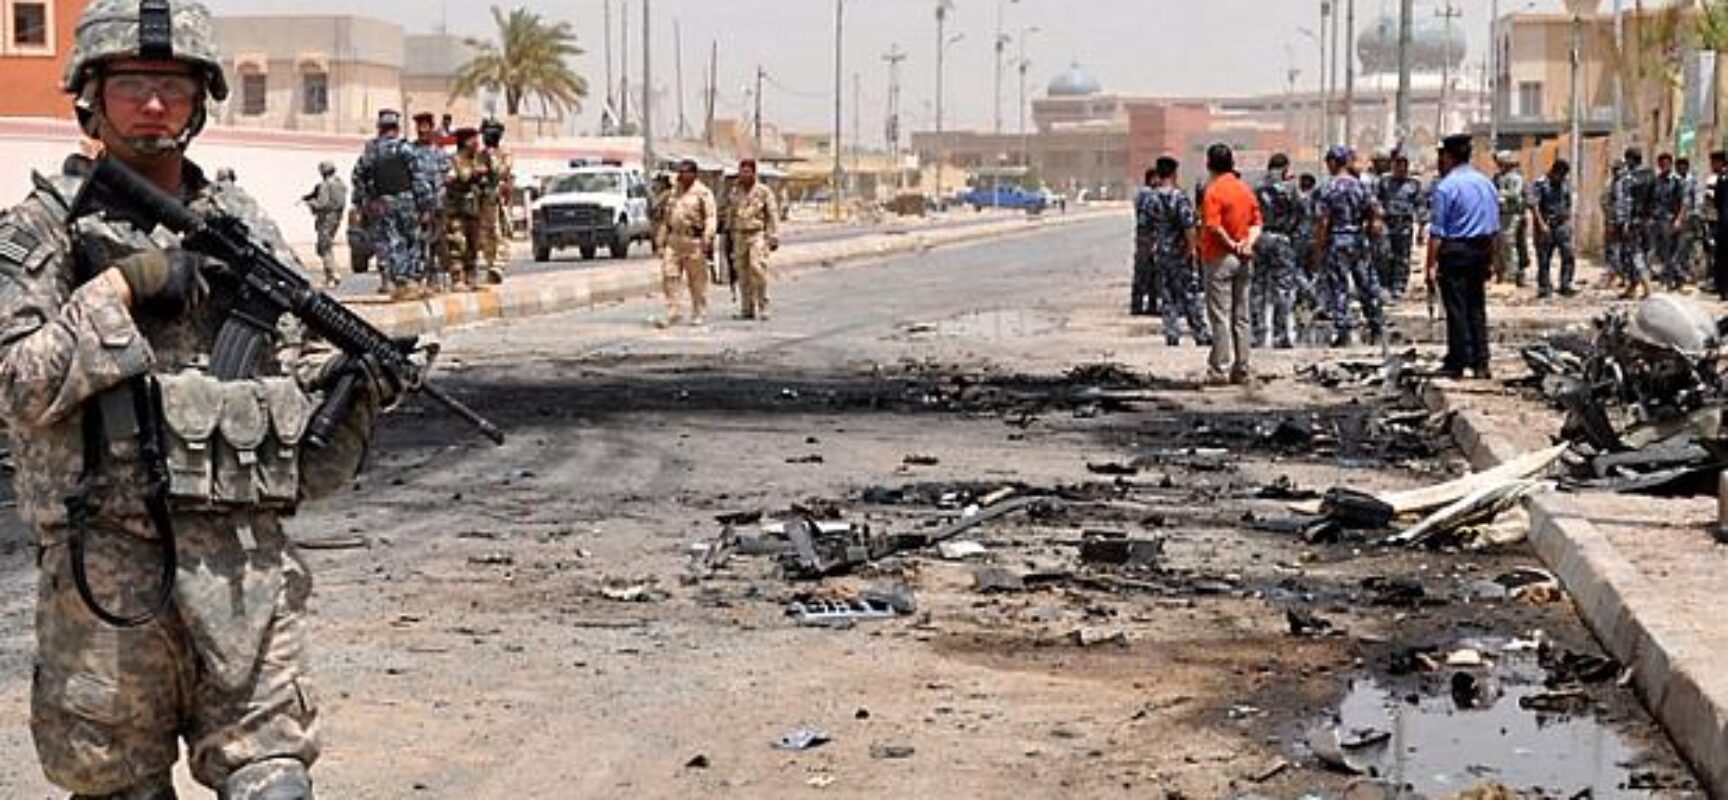 Iraque: explosão de tanque de oxigênio em hospital mata 82 pessoas